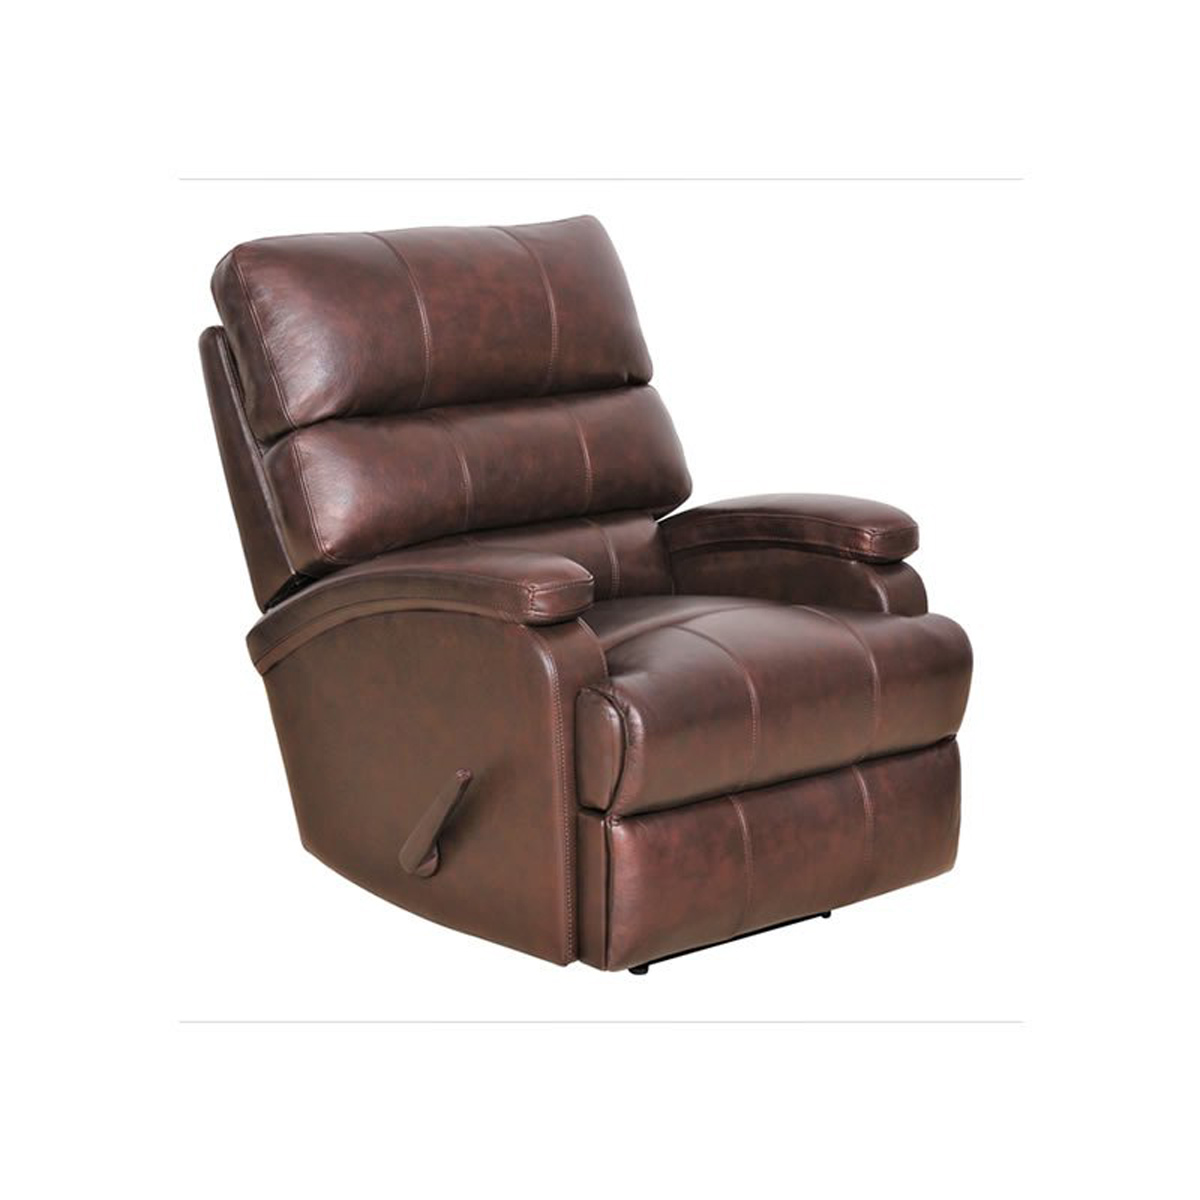 Barcalounger Detrick Rocker Recliner Chair - Ryegate Brown/Leather Match